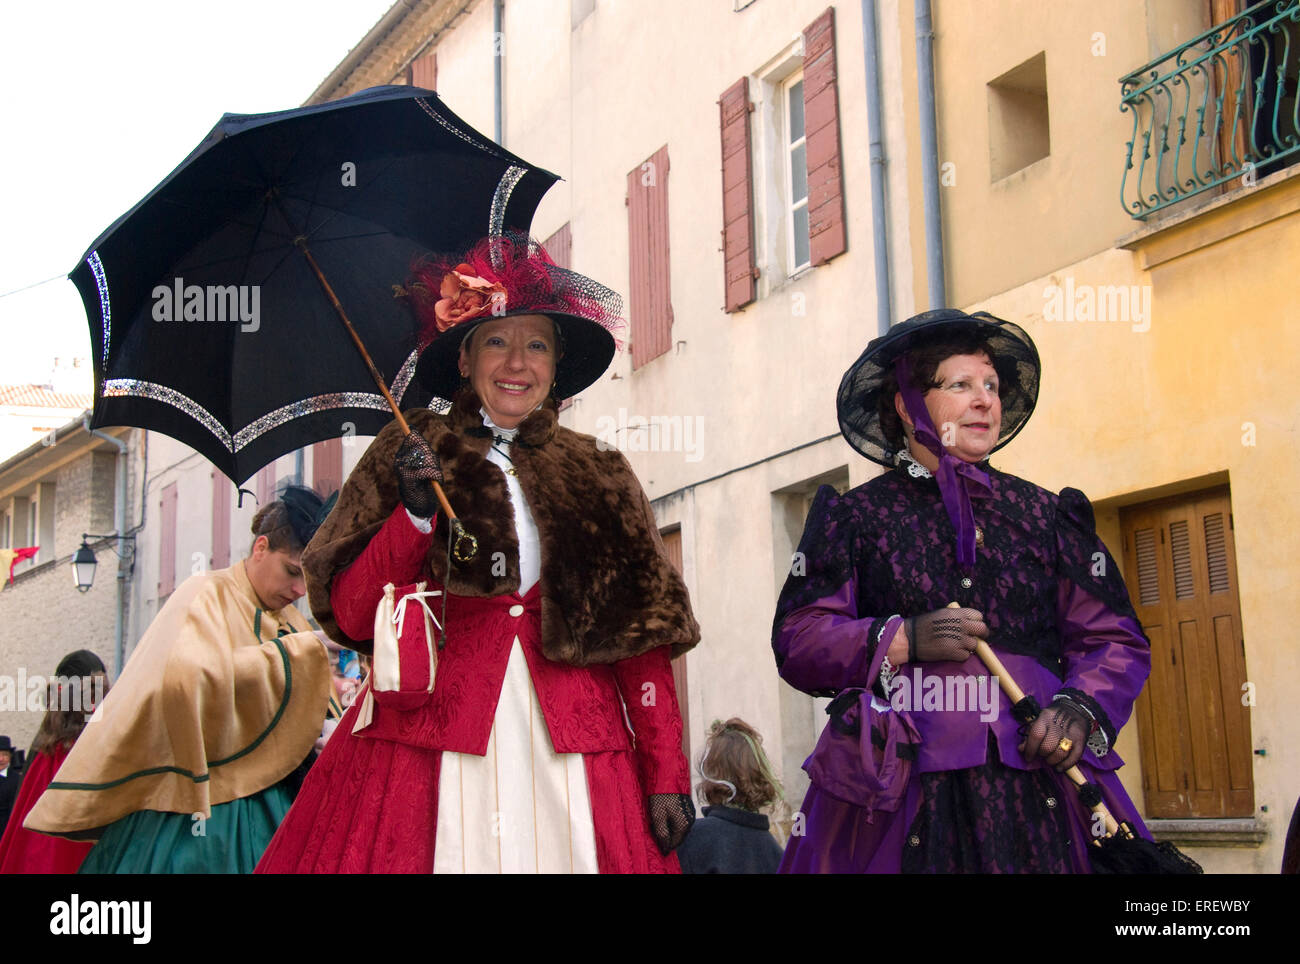 Deux dames en costumes victoriens de prendre part à une parade de la Saint-Valentin sur la commune de Roquemaure, dans le sud de la France. Banque D'Images